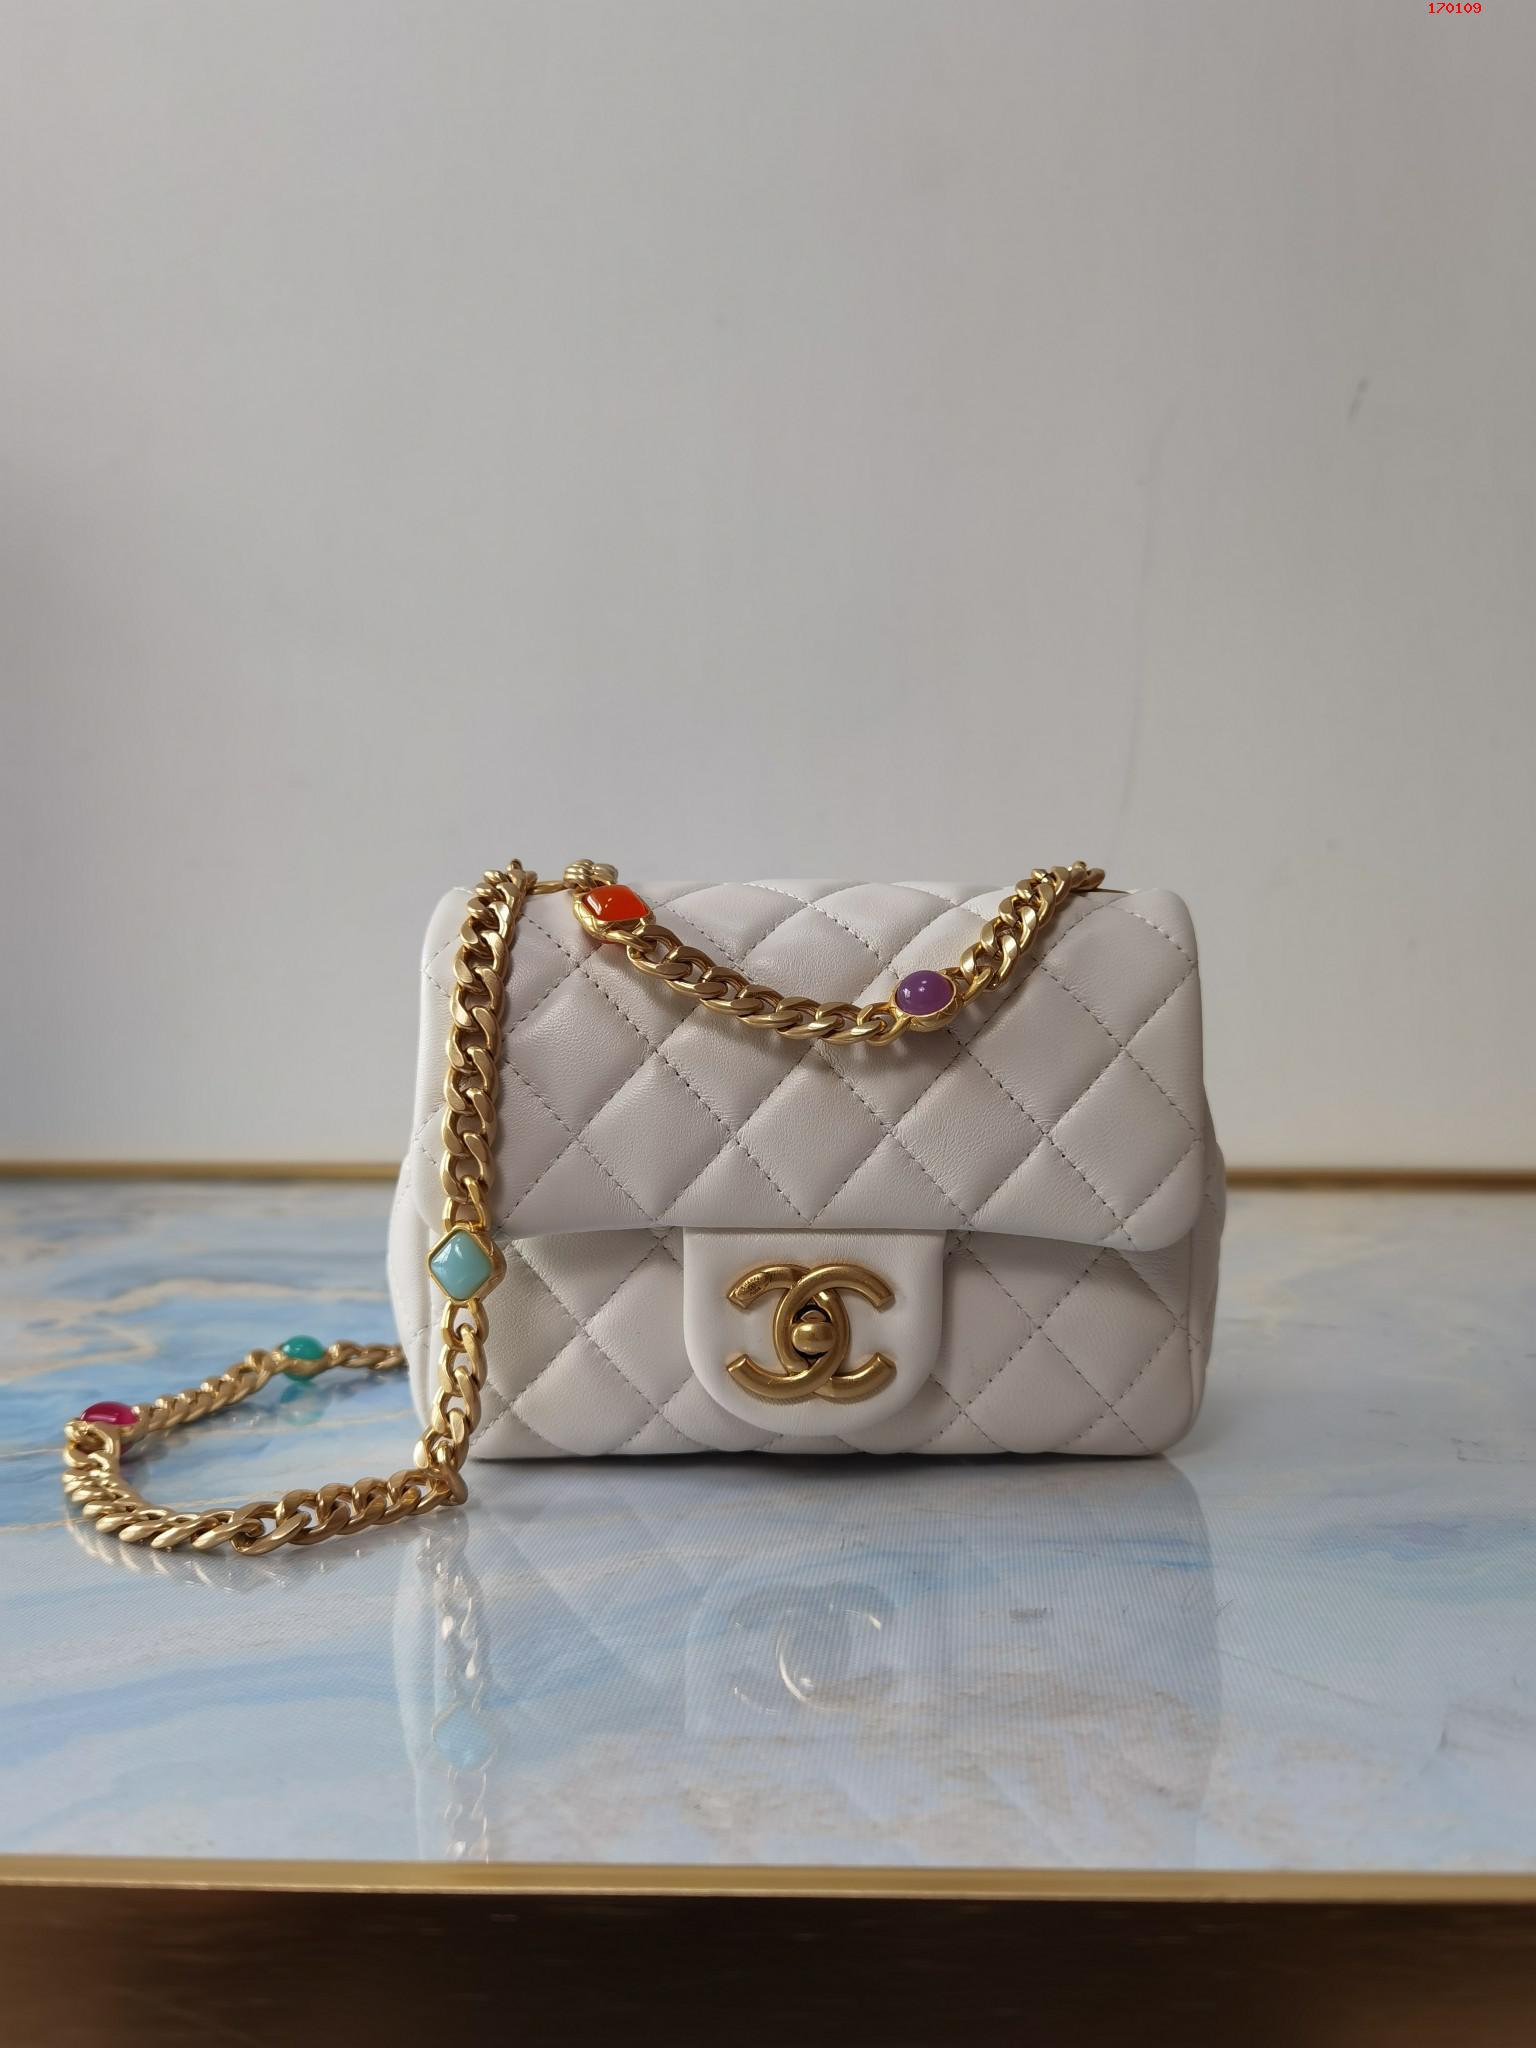 Chanel 白色 21早春宝石链条包 爆款五彩宝石口盖包 高仿香奈儿链条包 AS2379